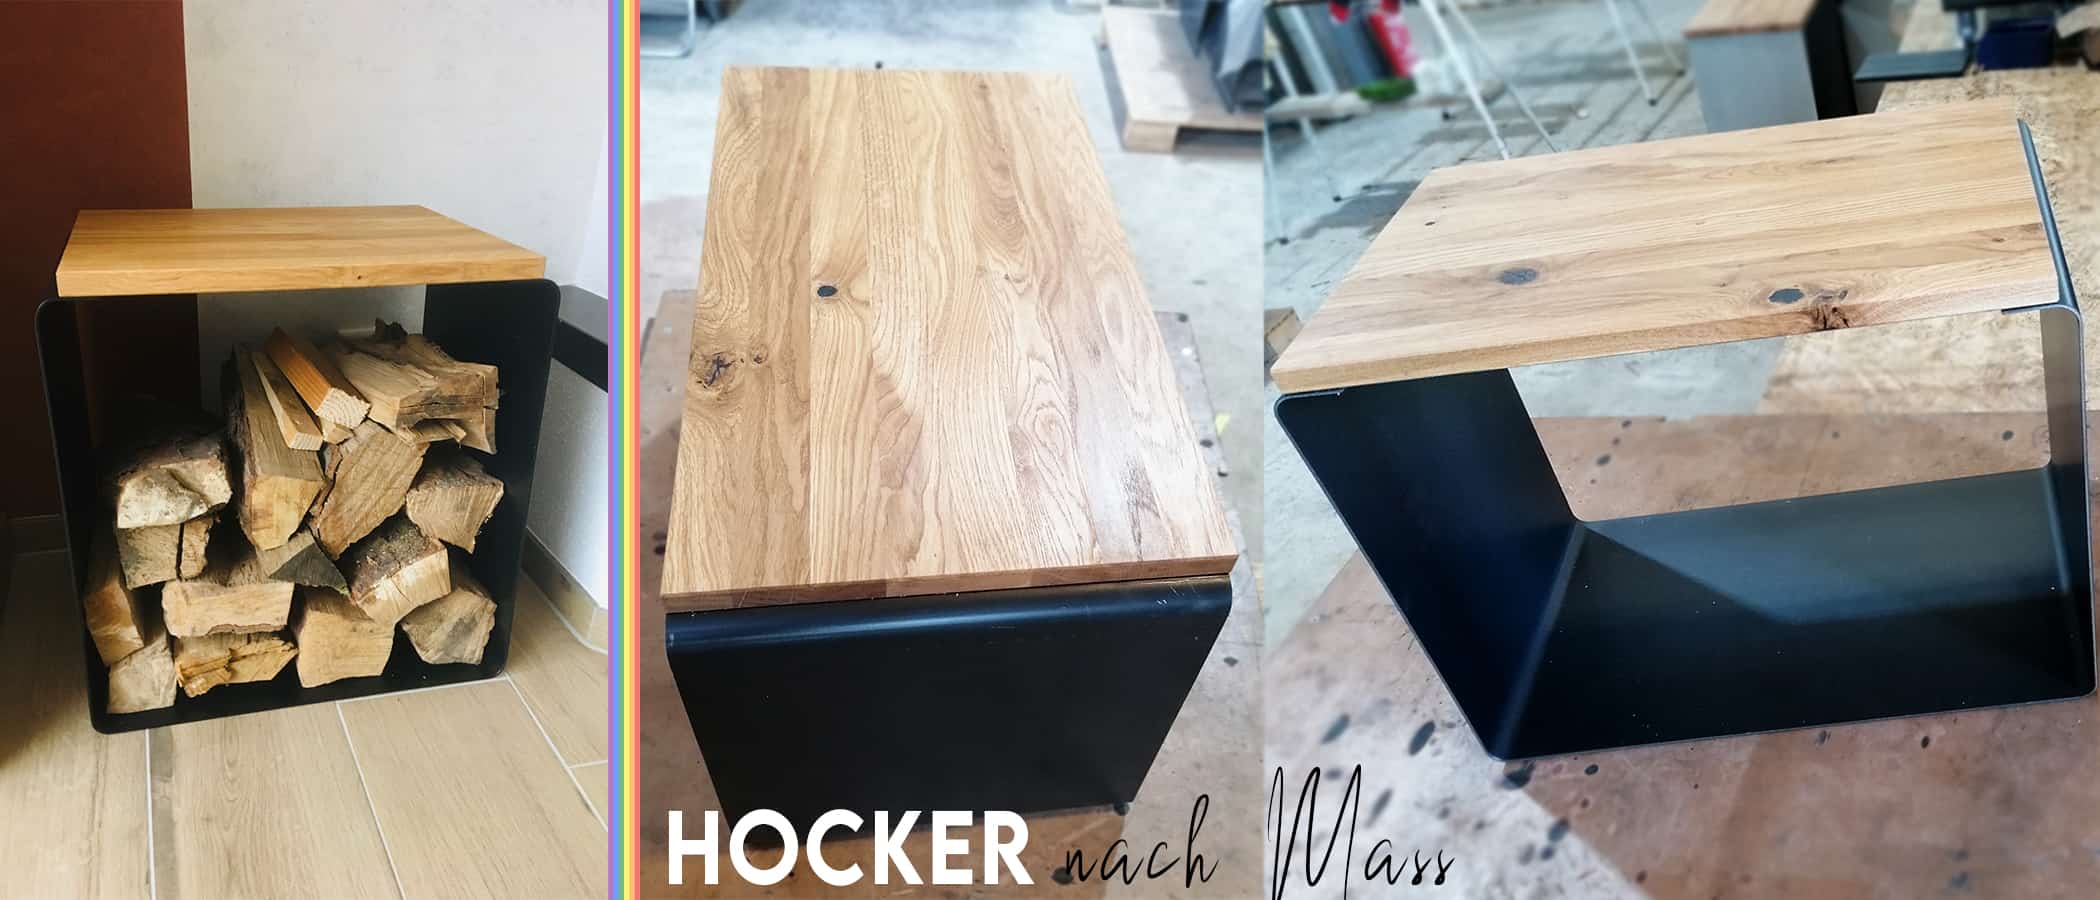 hocker-nach-mass-holz-stauraum-grau-schwarz-weiss-rund-ergonomisch-couch-rollen-schreibtisch-design-metall-modern-individuell-massivholz-wildeiche-stahlzart